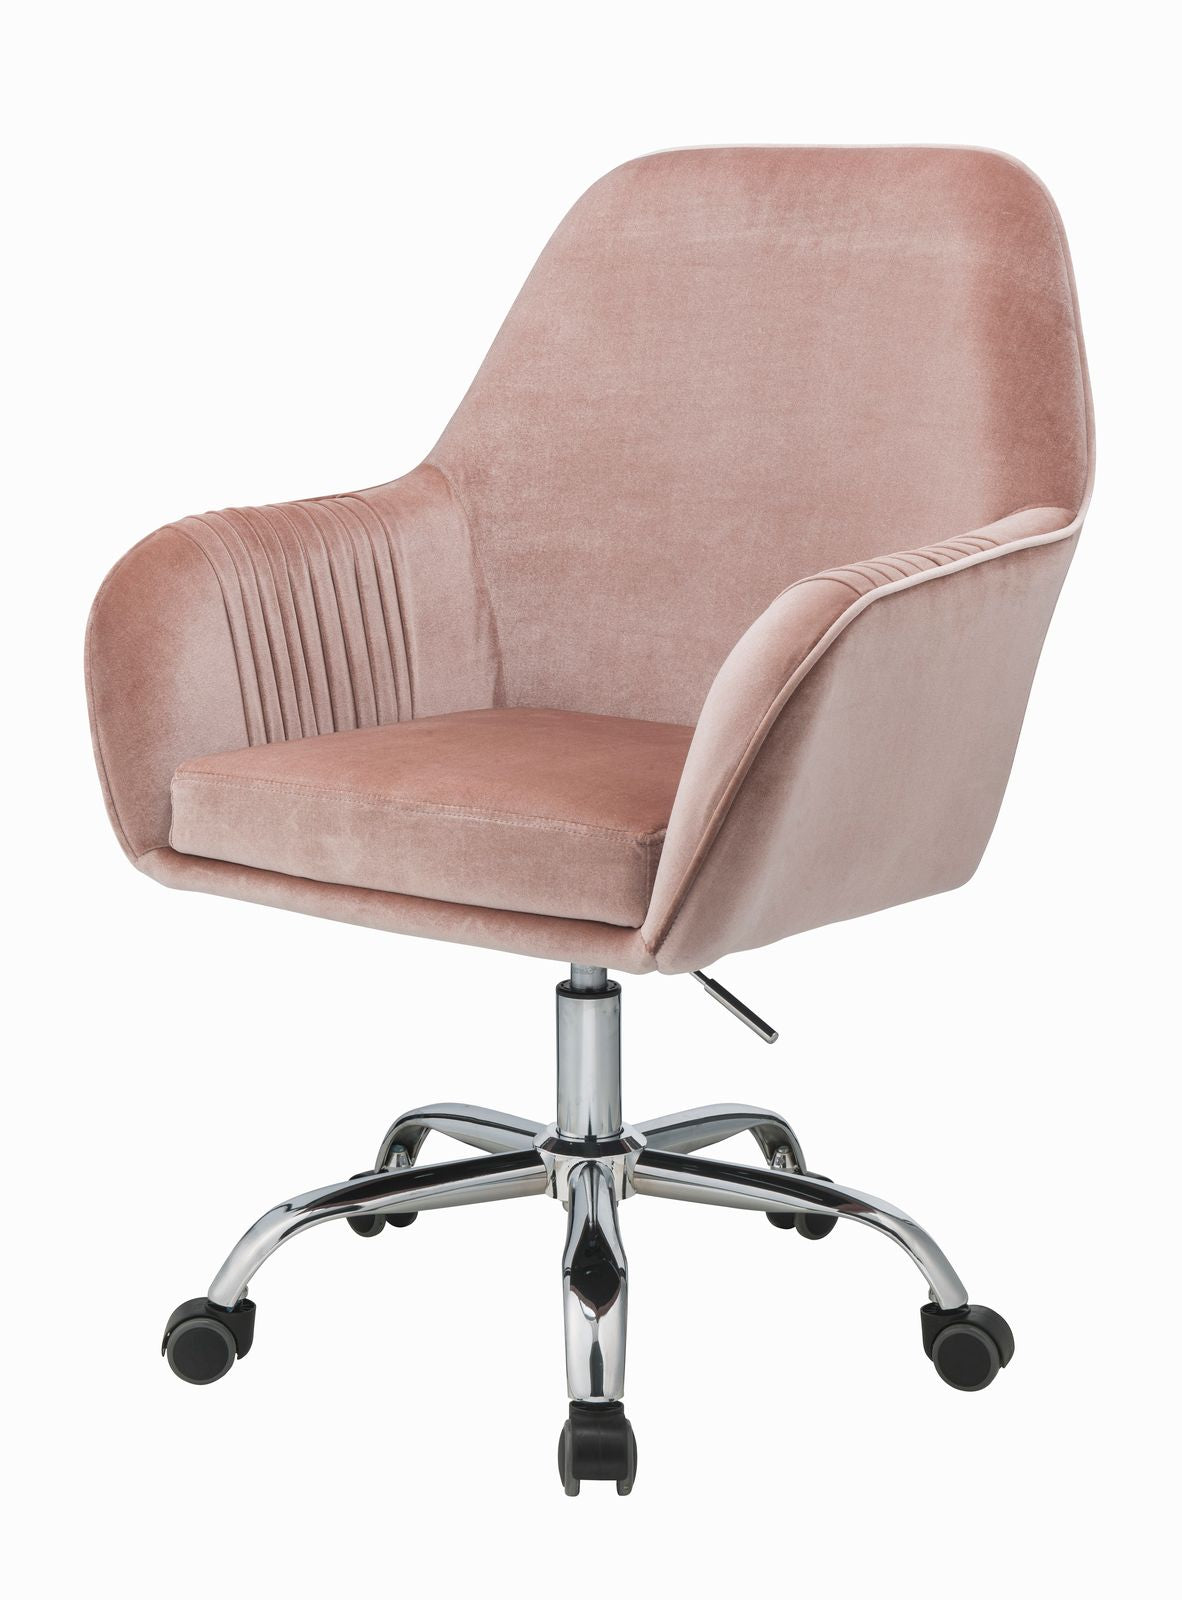 Eimer Office Chair in Peach Velvet & Chrome